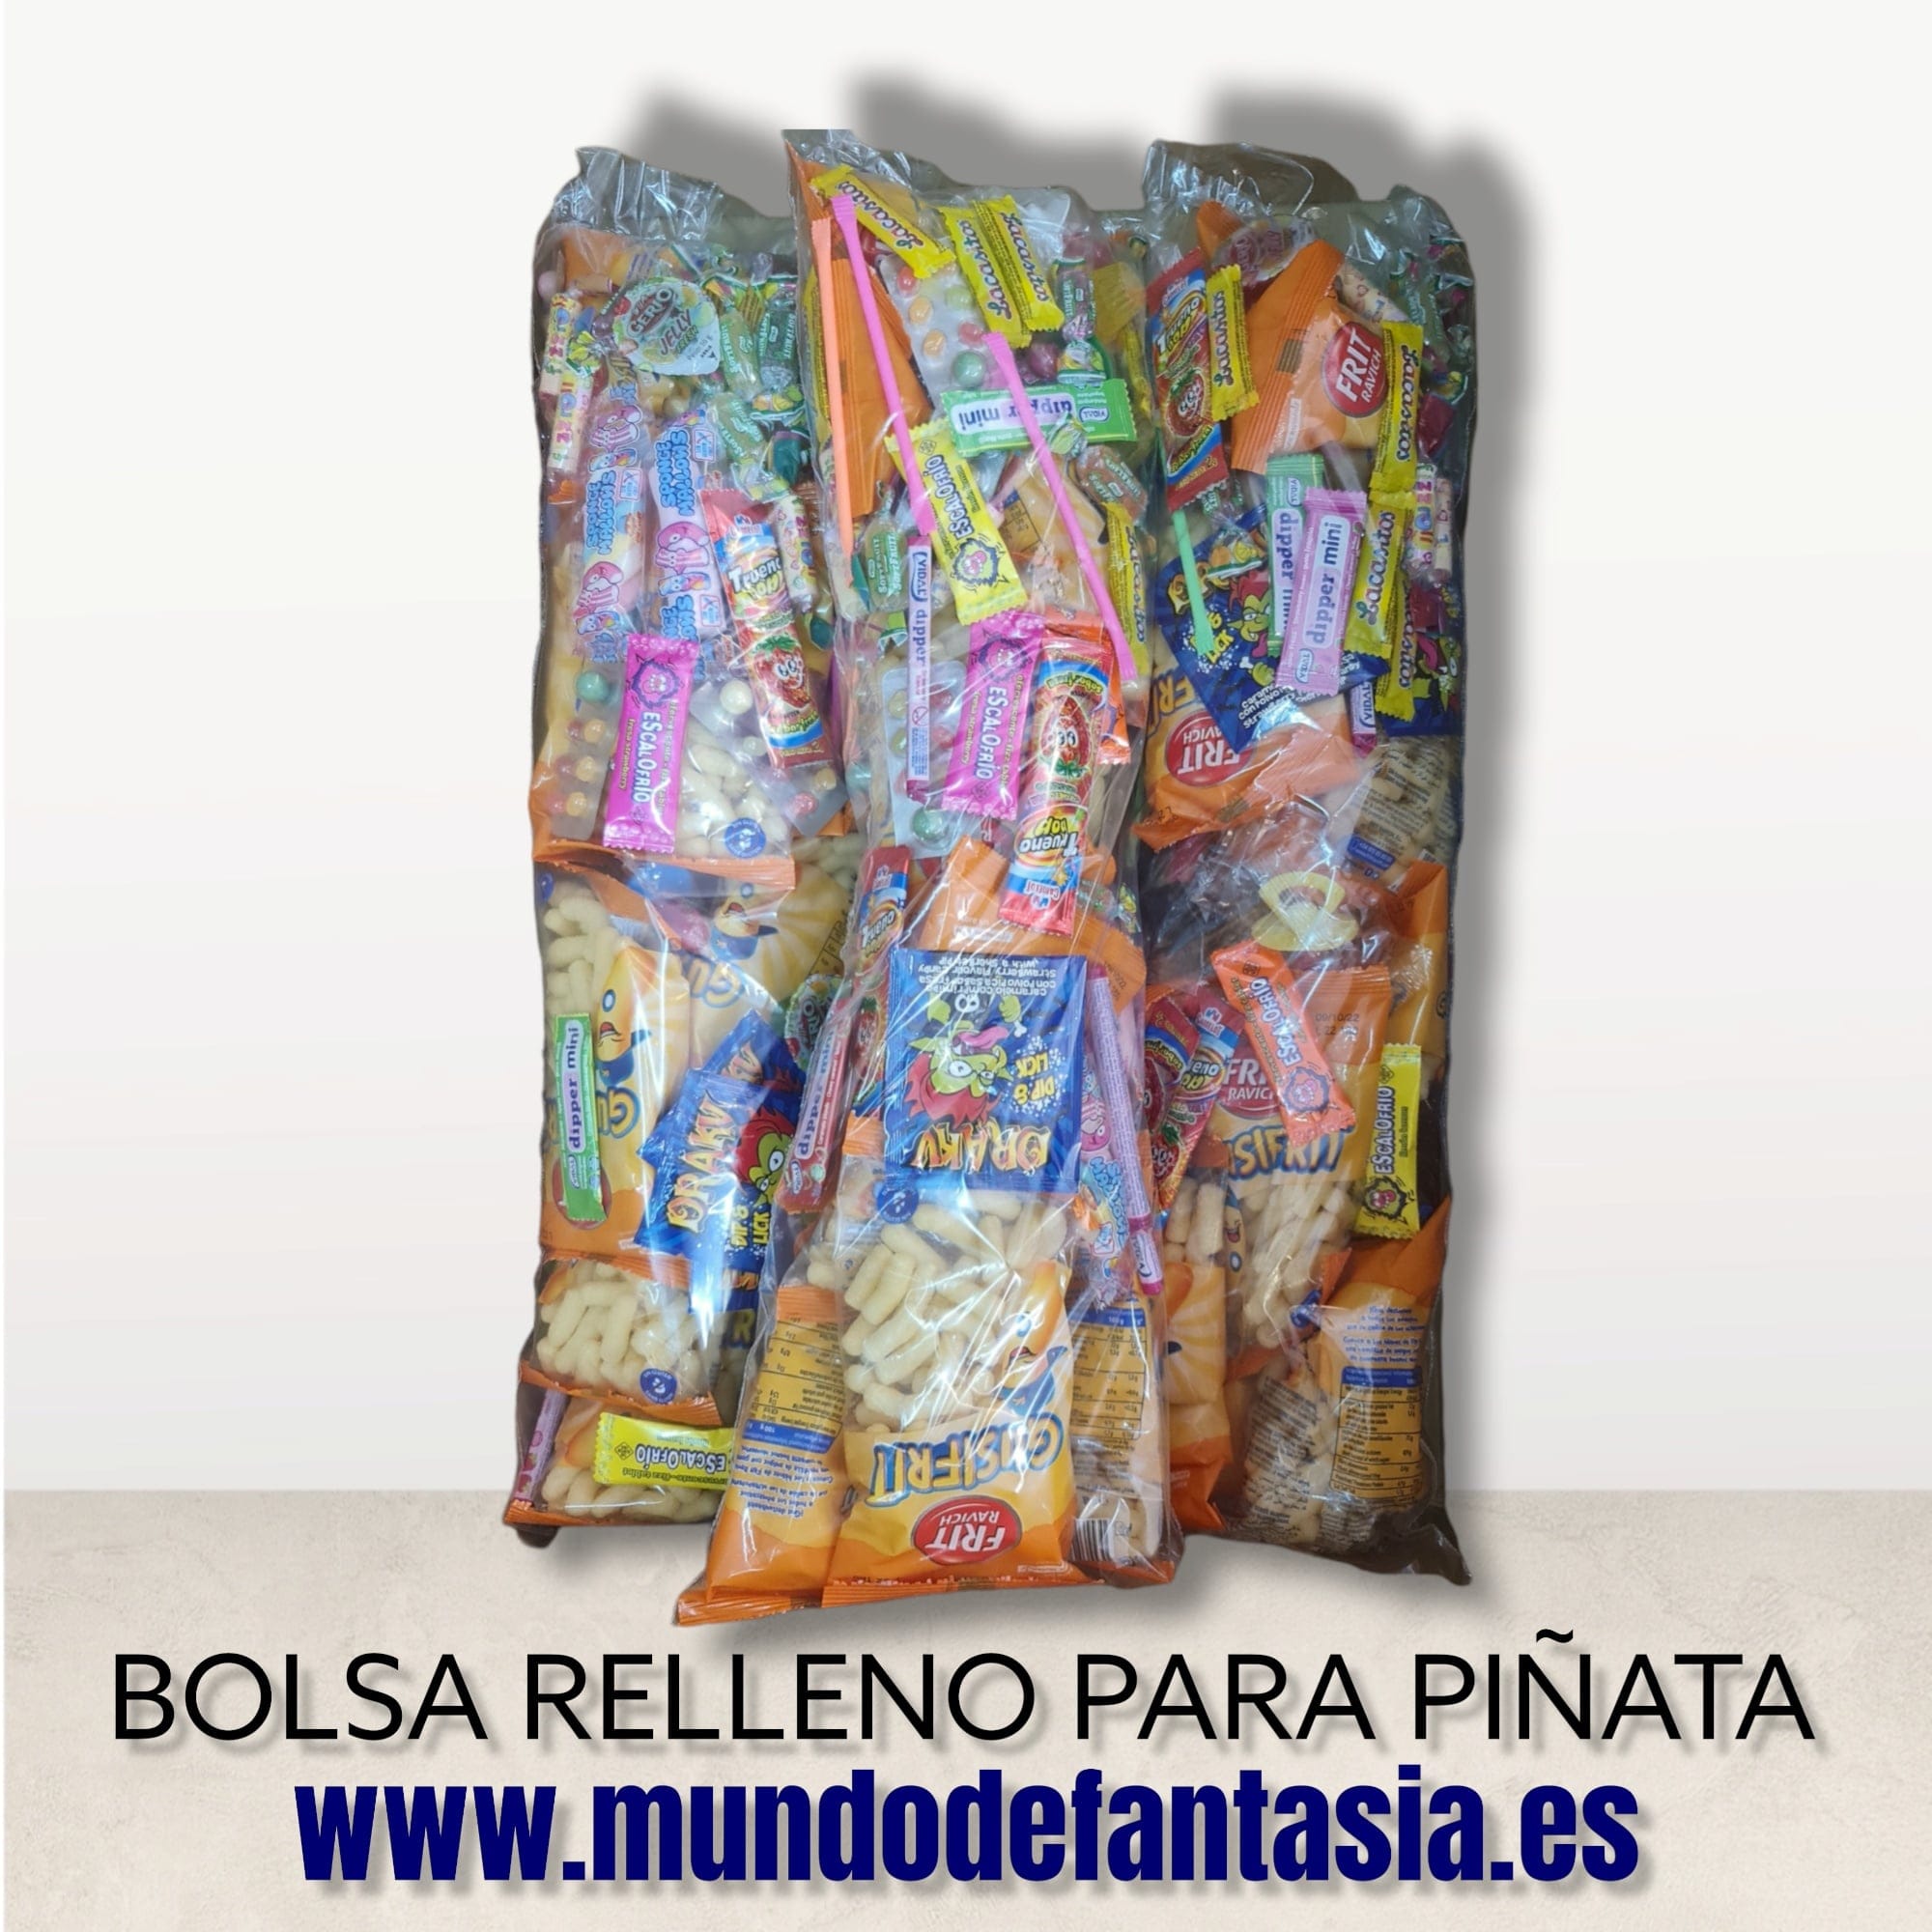 Relleno de chuches para Piñata - Mundodefantasia